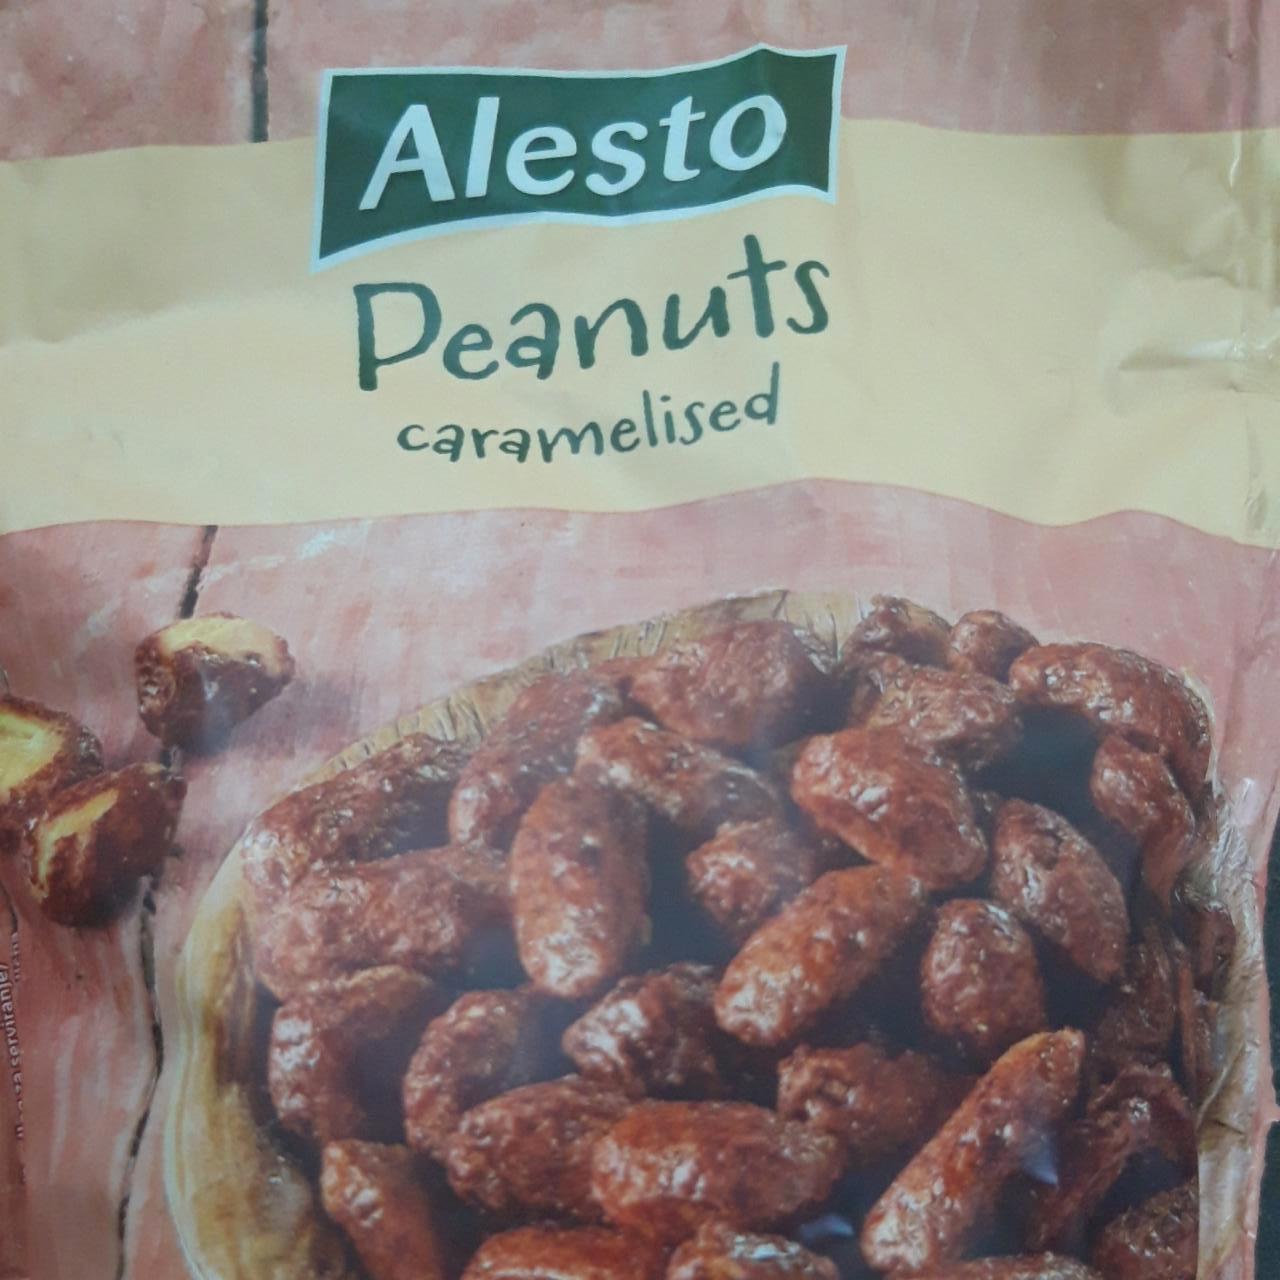 Képek - Peanuts caramelised Alesto